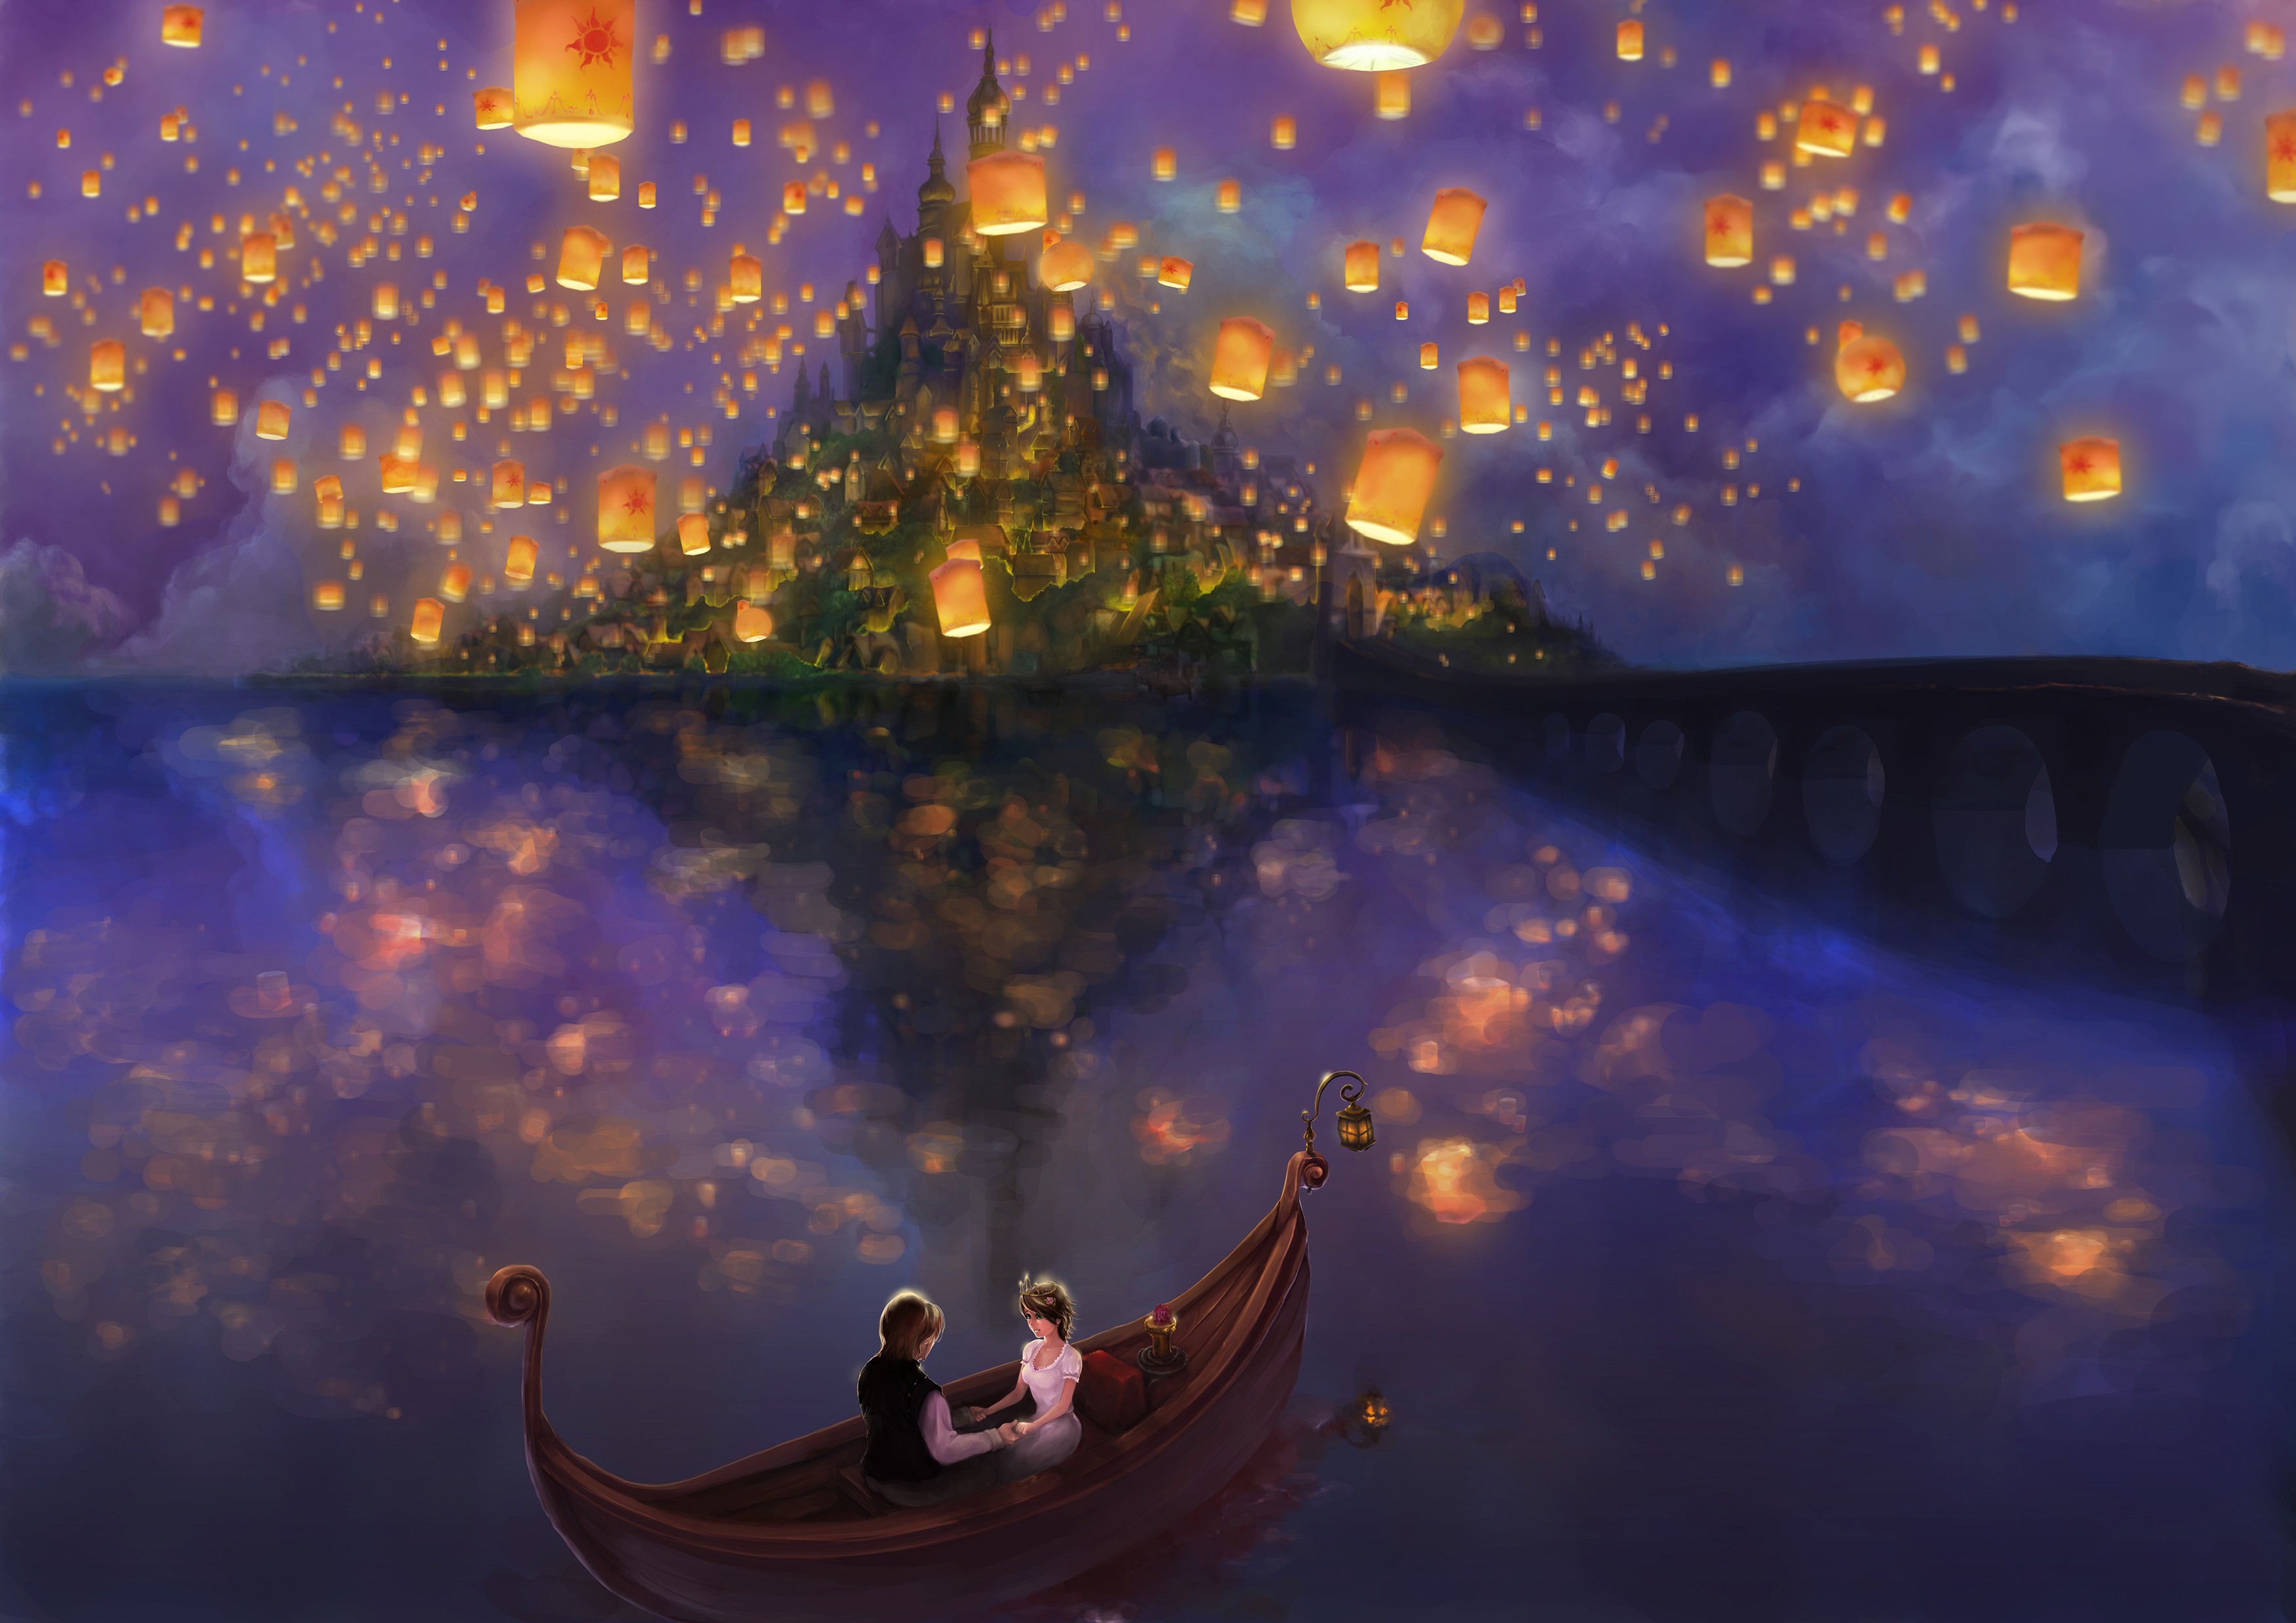 Art Disney Wallpapers